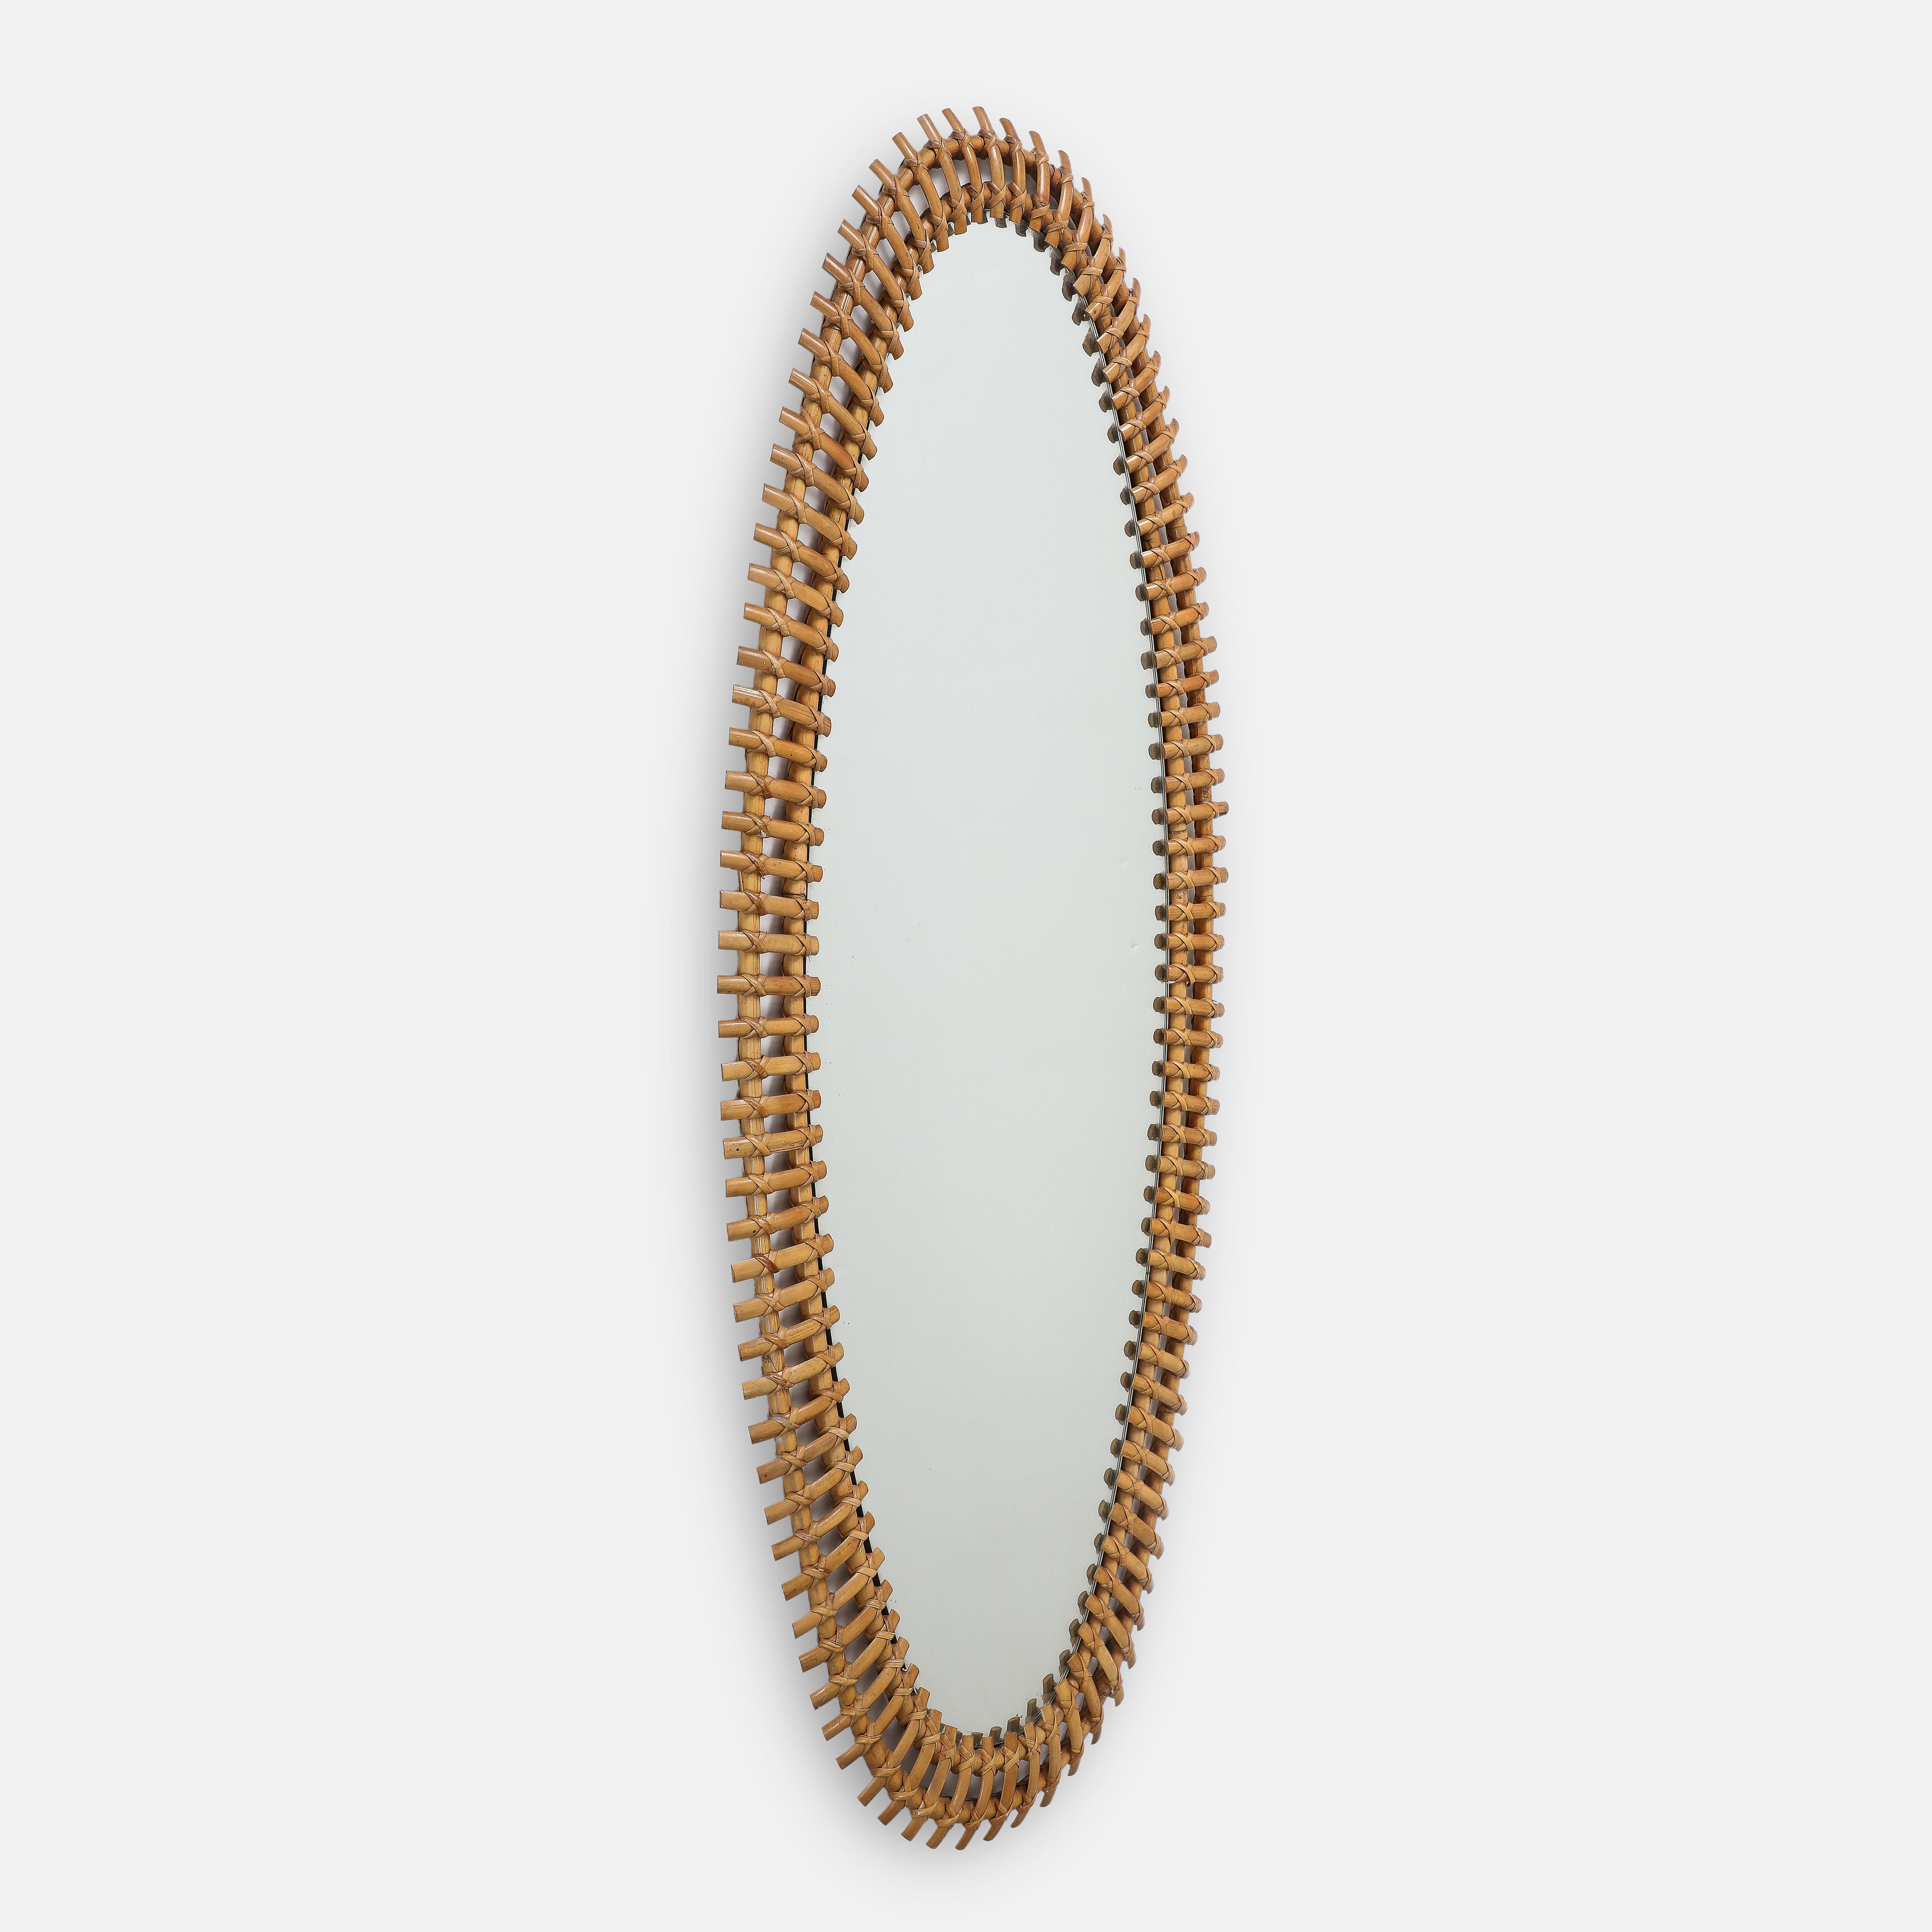 Rare miroir ovale de grande taille de Bonacina avec des pièces de bambou légèrement courbées et tressées à la main sur un cadre de doubles tiges de bambou avec verre miroir d'origine. Ce miroir monumental est d'une taille impressionnante et d'une